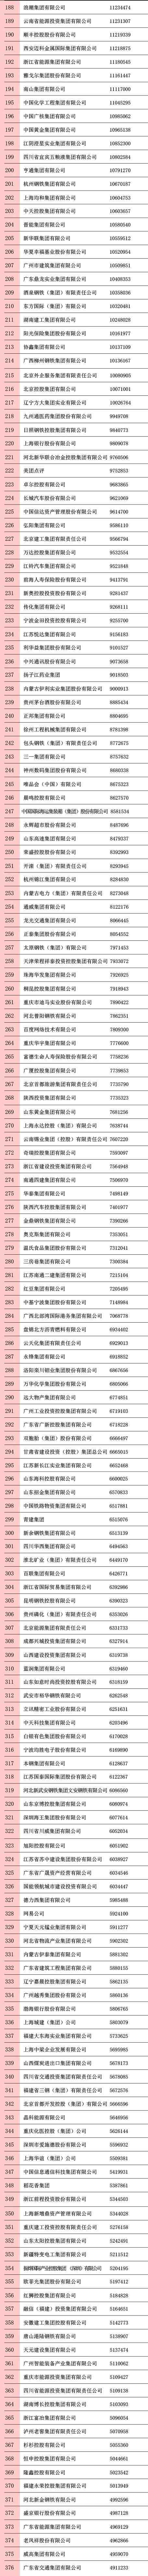 中国五百强排名|中国品牌500强排名